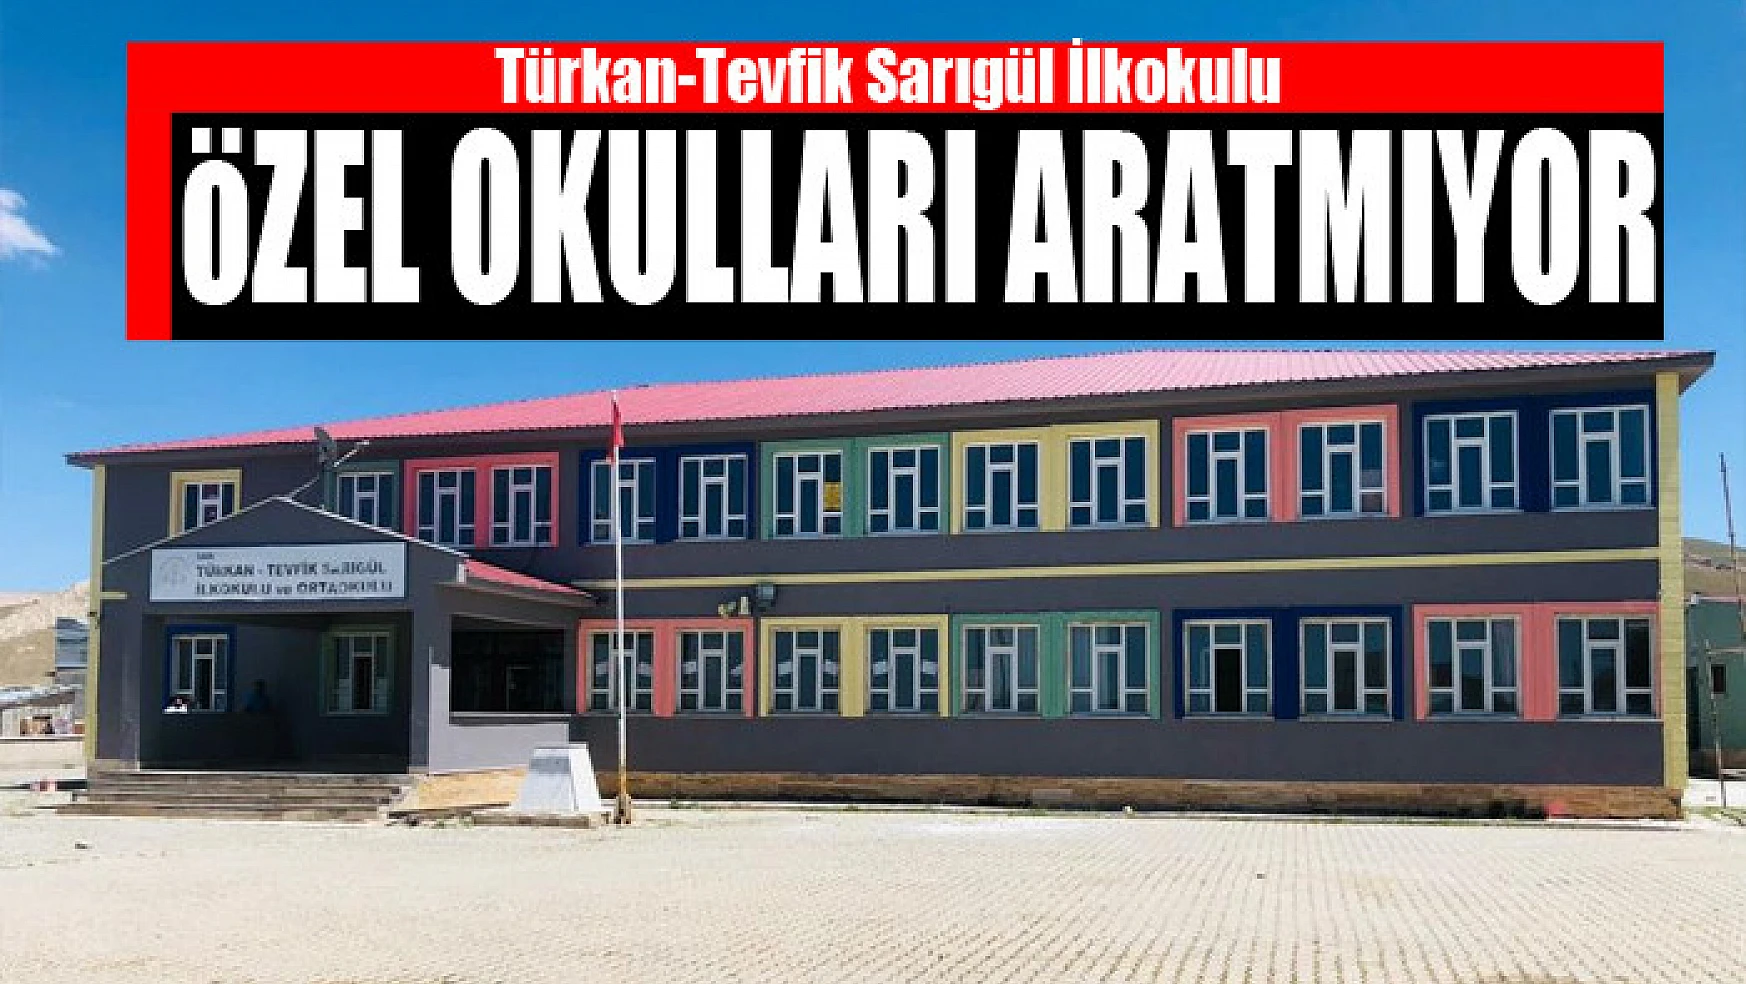 Türkan-Tevfik Sarıgül İlkokulu özel okulları aratmıyor